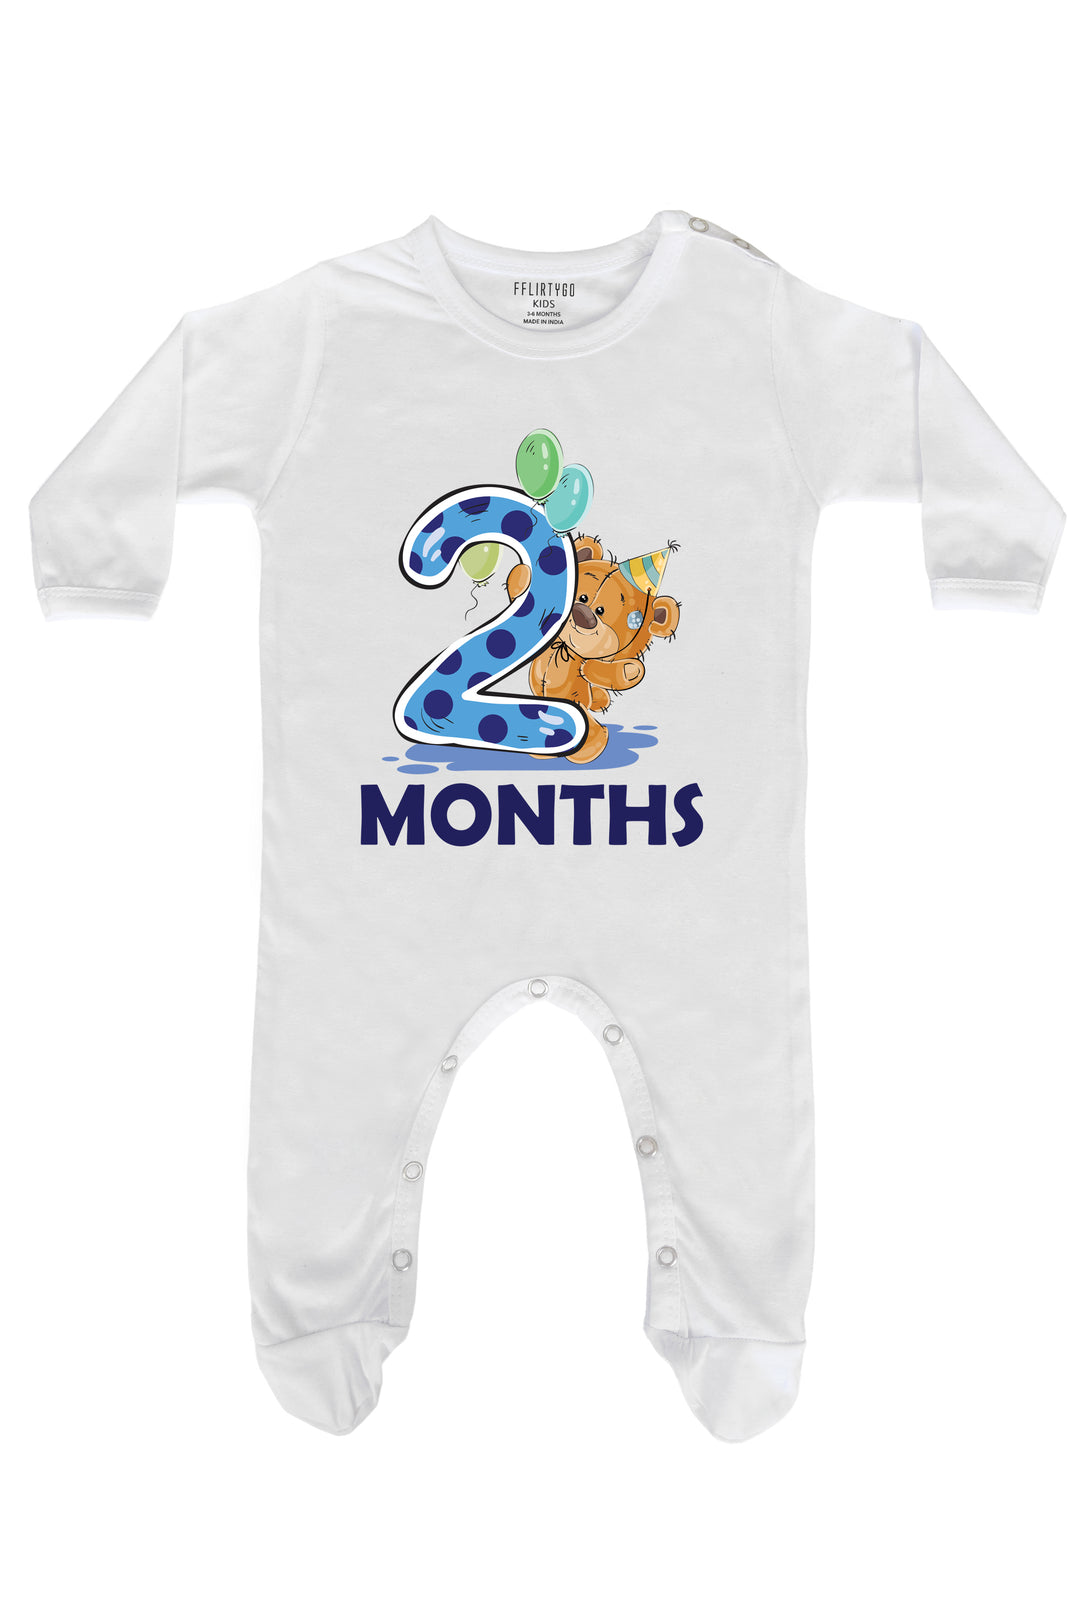 Two Months Milestone Baby Romper | Onesies